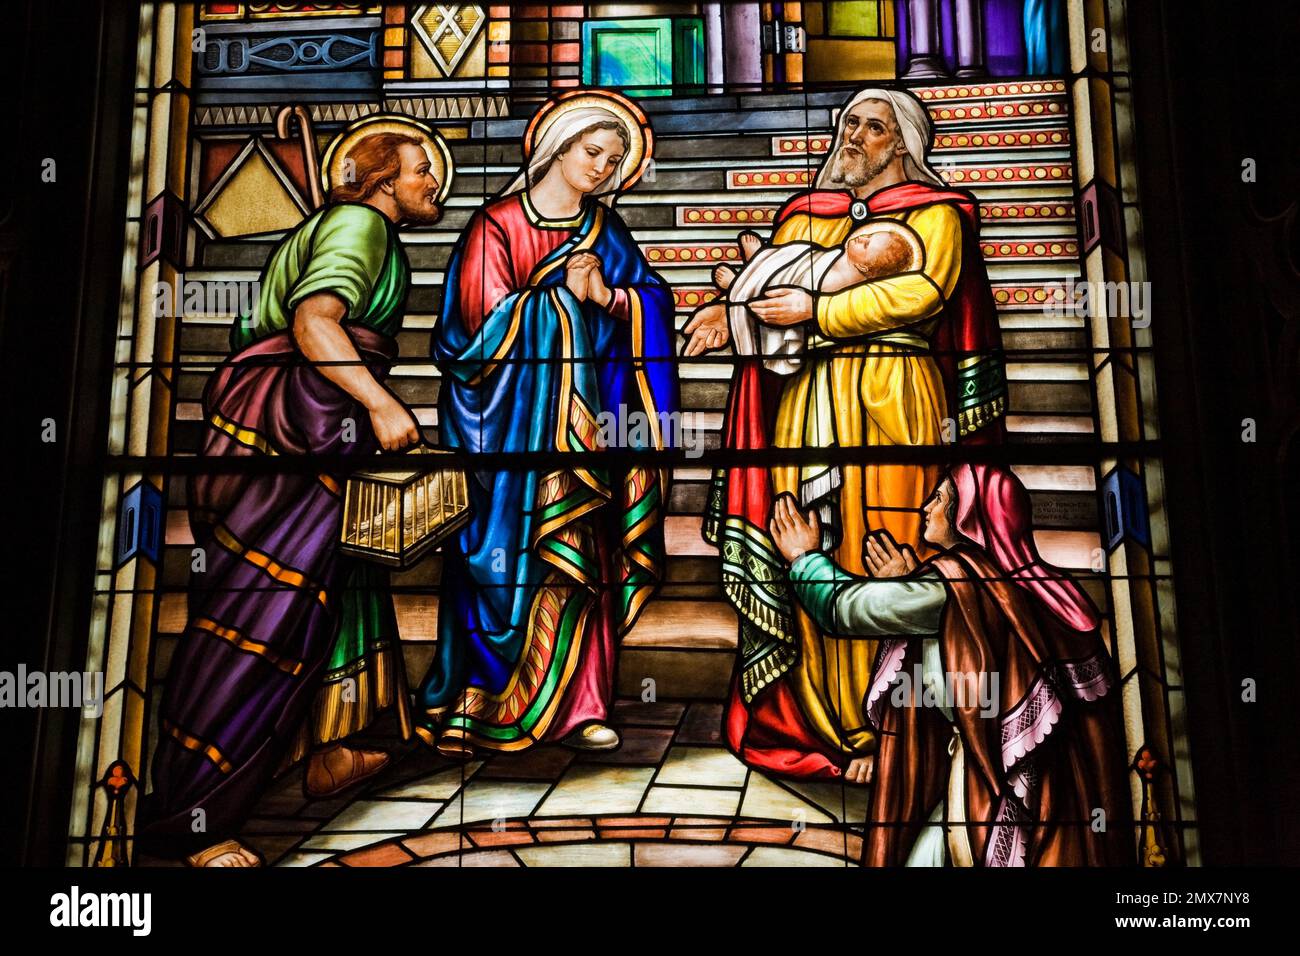 Vitrail avec scène religieuse montrant Joseph et la Vierge Marie, Basilique notre-Dame, Ottawa, Ontario, Canada. Banque D'Images